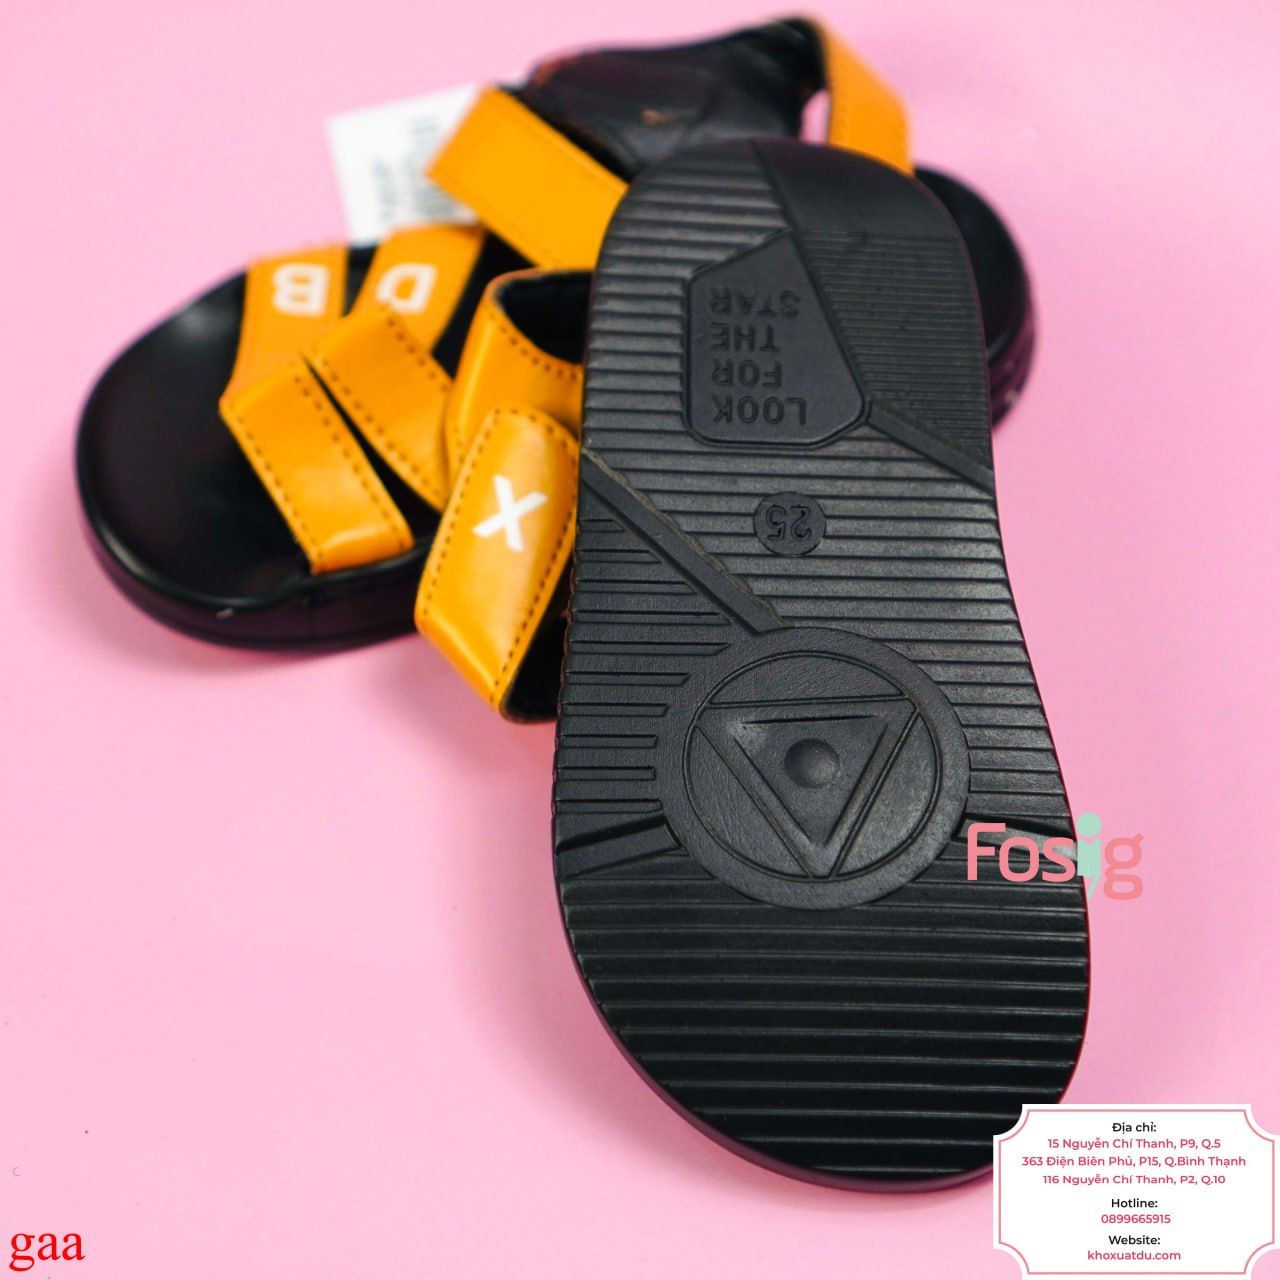  [14cm] Giày Sandal Cho Bé Trai - Vàng Chữ Trắng 